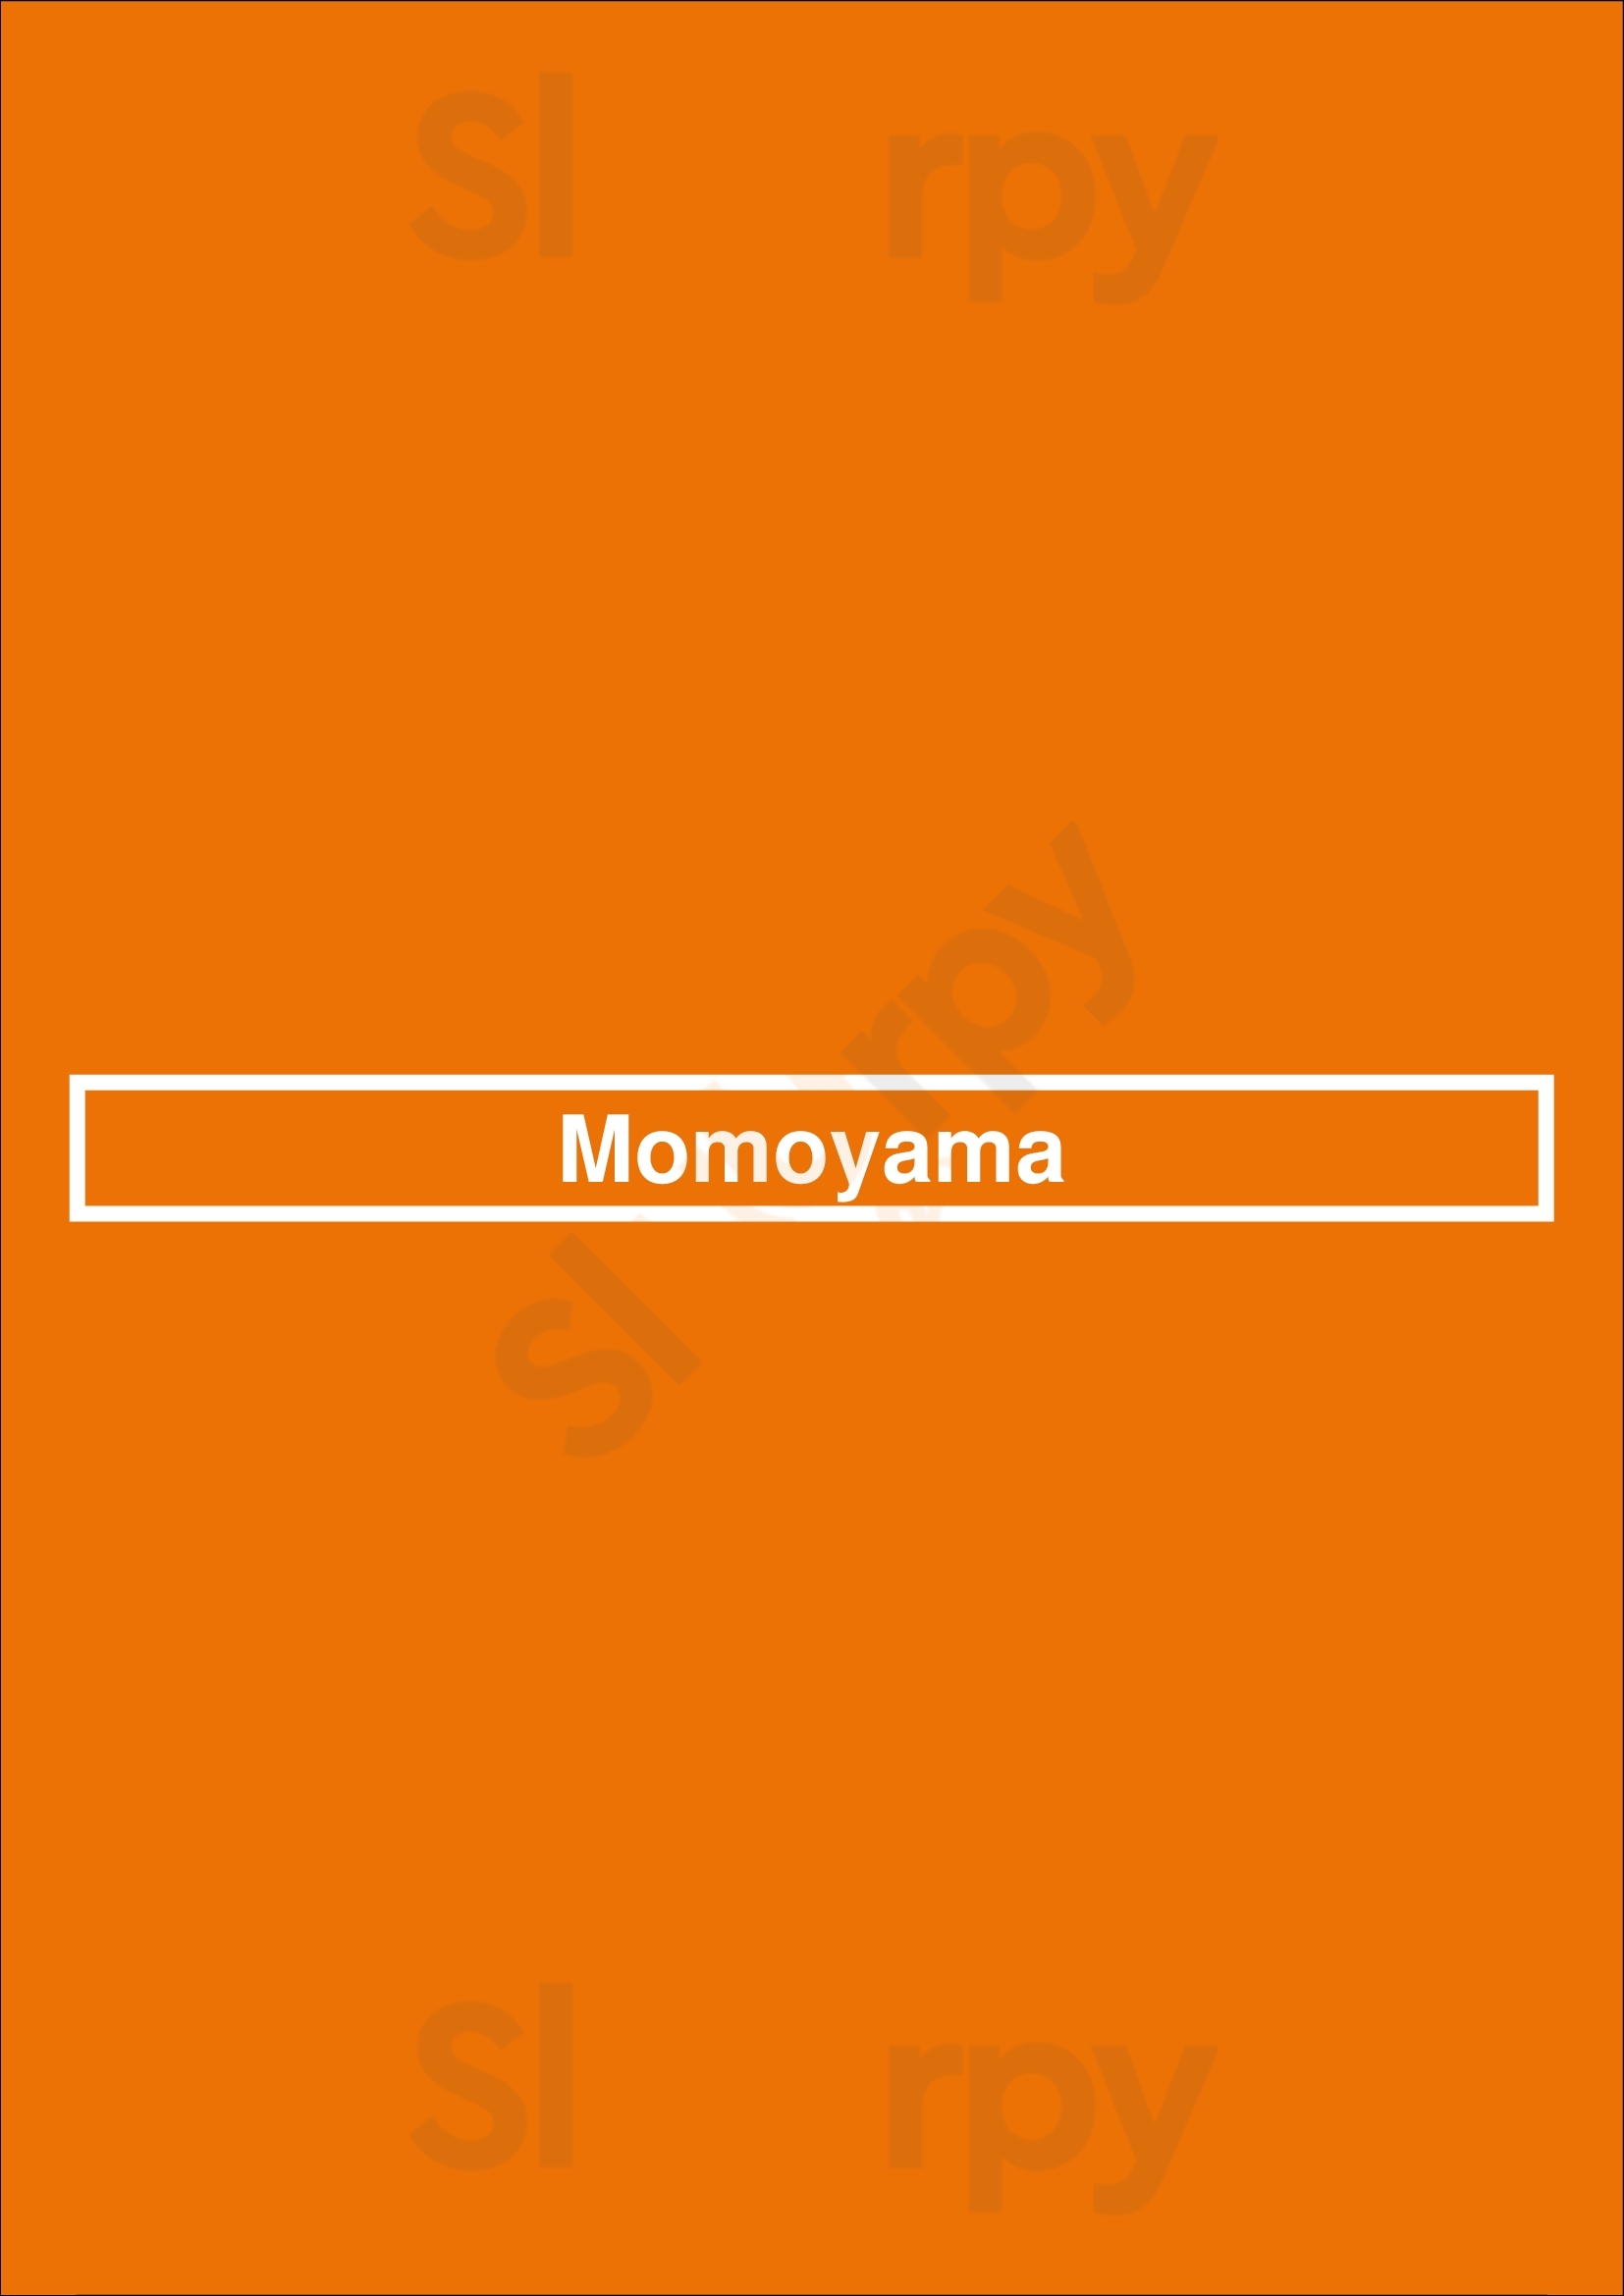 Momoyama Eindhoven Menu - 1